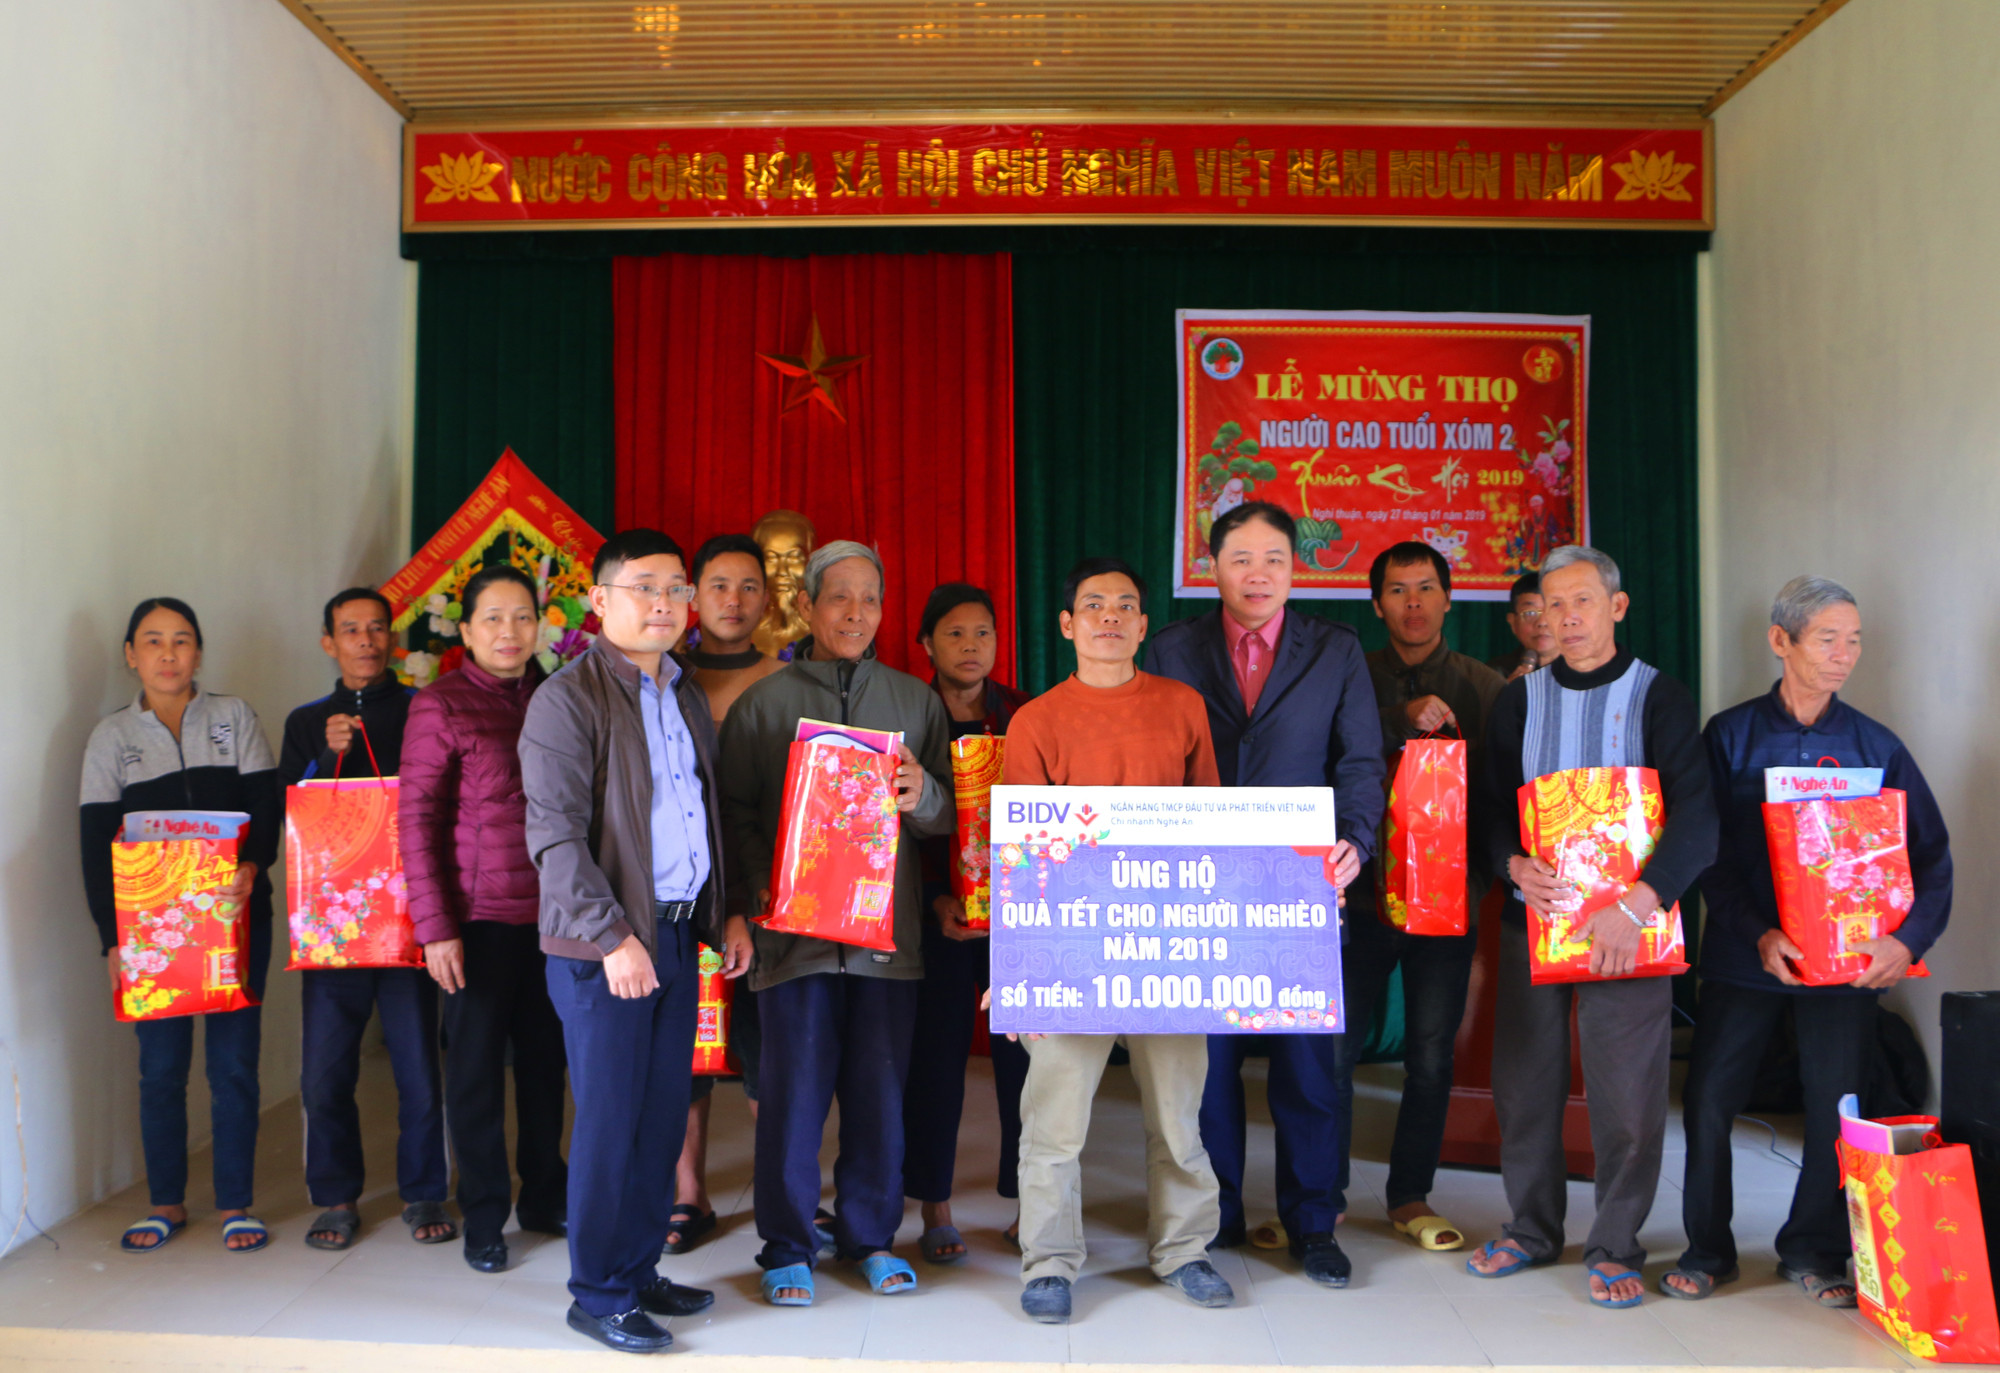 Đại diện Ban Tổ chức Tỉnh ủy và nhà tài trợ BIDV Nghệ An trao 10 suất quà Tết cho hộ nghèo xóm 2. Ảnh: Nguyễn Hải